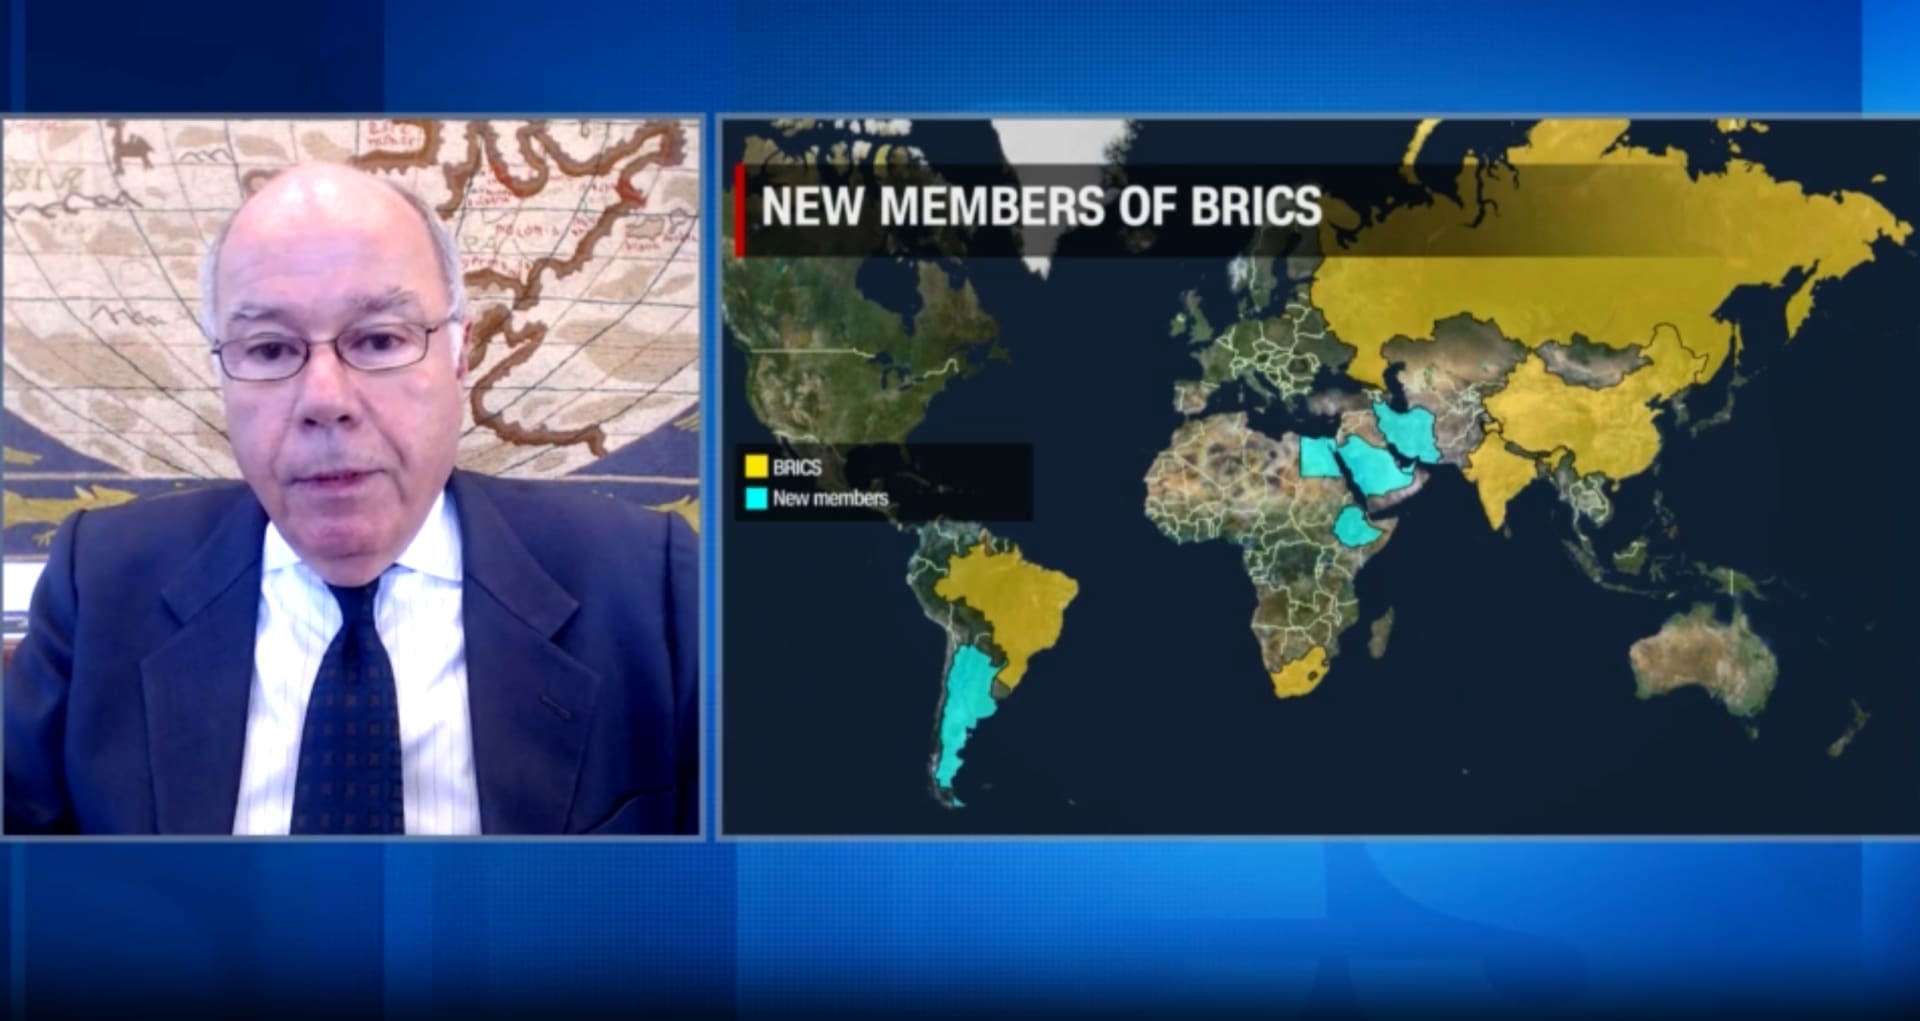 مدى توافق دول بريكس على دعوة الأعضاء الجدد وادعاء استهدافه الدولار.. وزير خارجية البرازيل يرد لـCNN